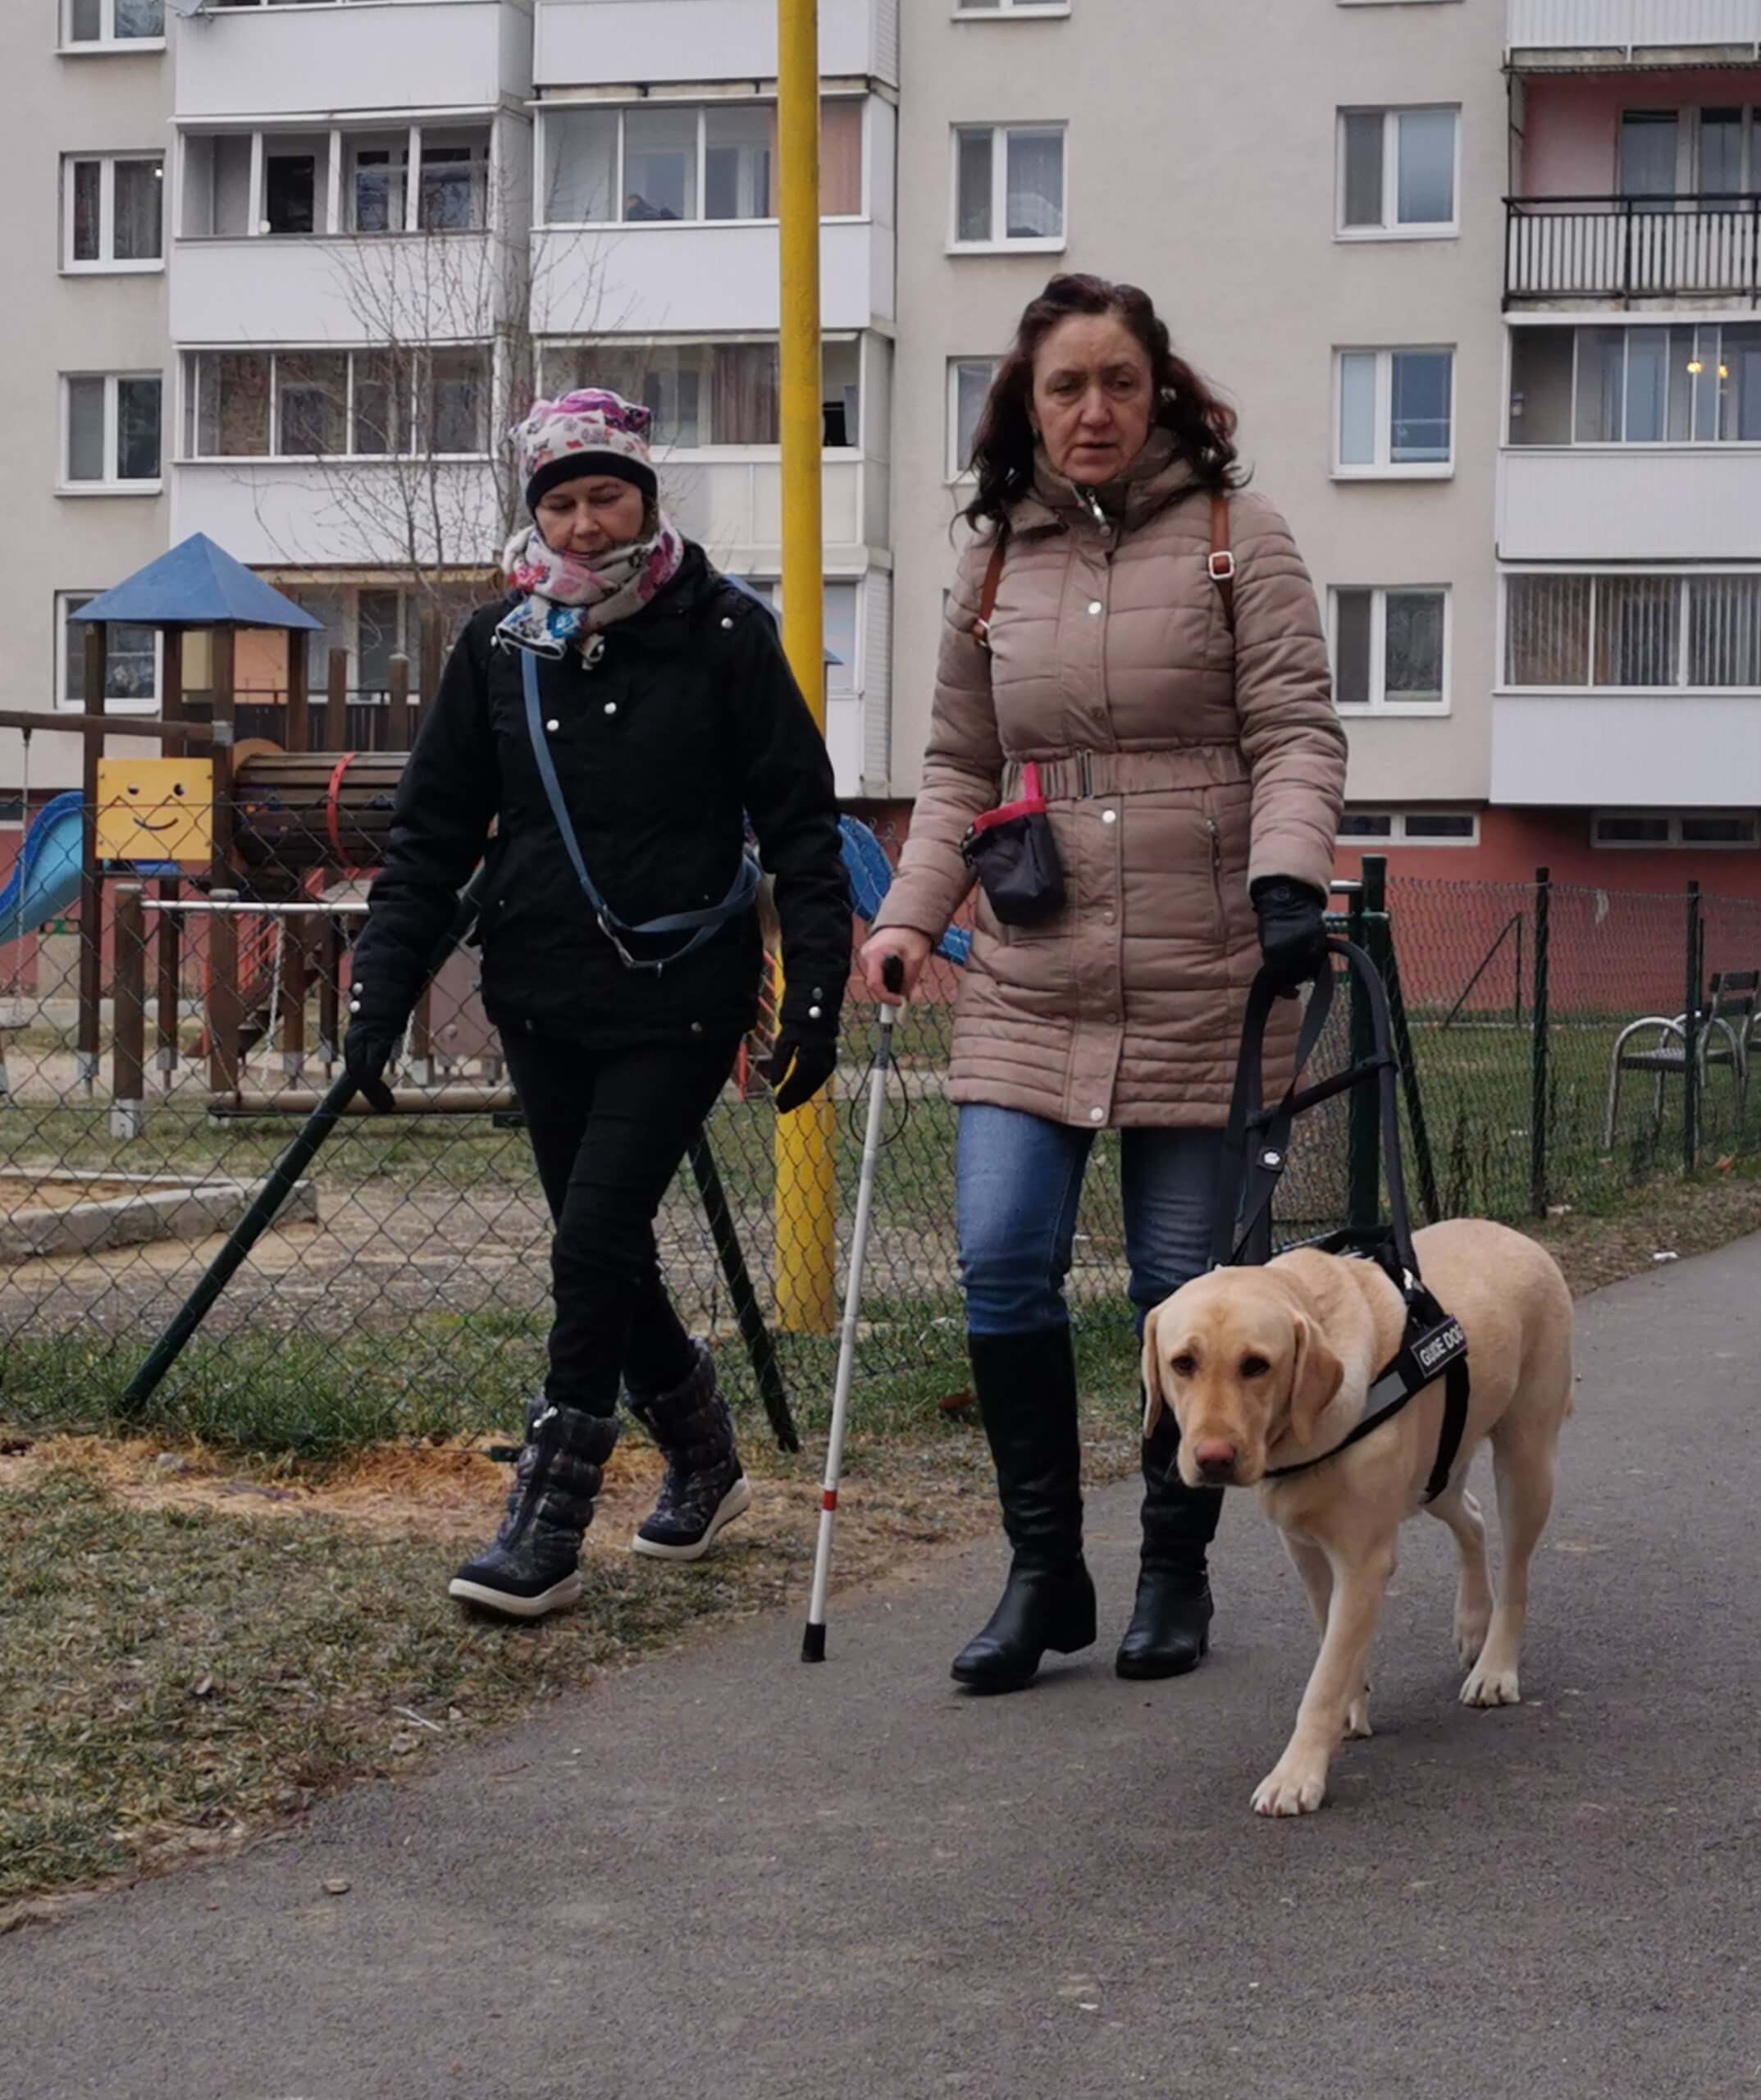 Po chodníku kráča klientka s vodiacim psom v postroji, za nimi ide cvičiteľka a dohliada na ich spoluprácu. 